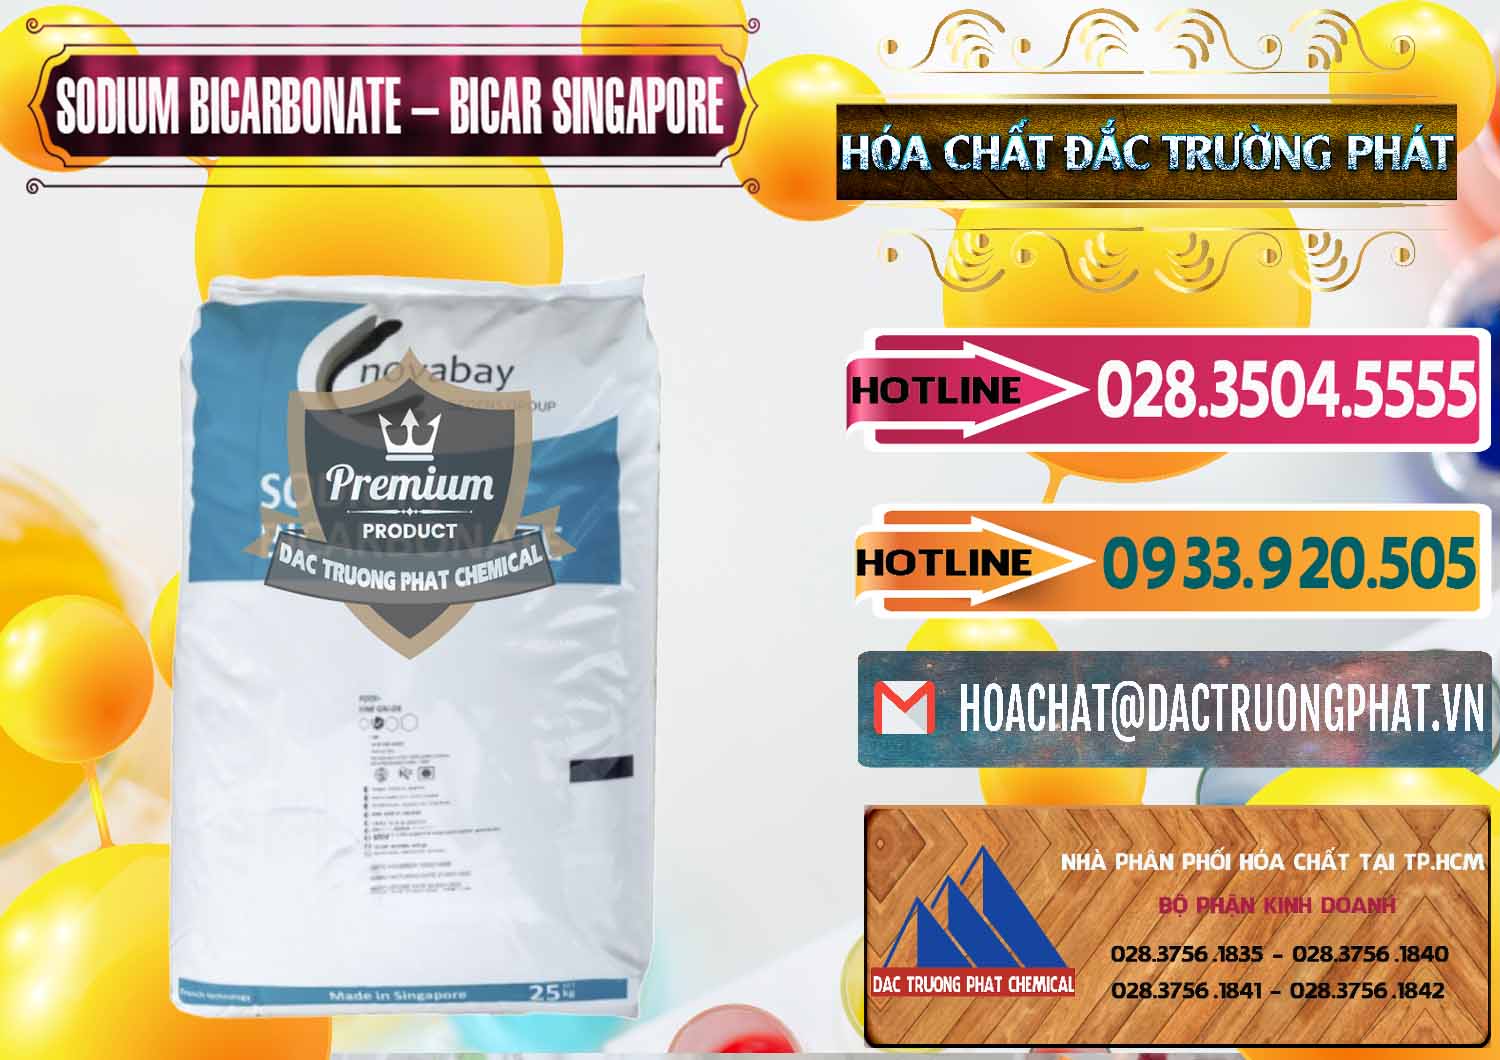 Đơn vị chuyên kinh doanh - bán Sodium Bicarbonate – Bicar NaHCO3 Singapore - 0411 - Nơi phân phối và cung cấp hóa chất tại TP.HCM - dactruongphat.vn